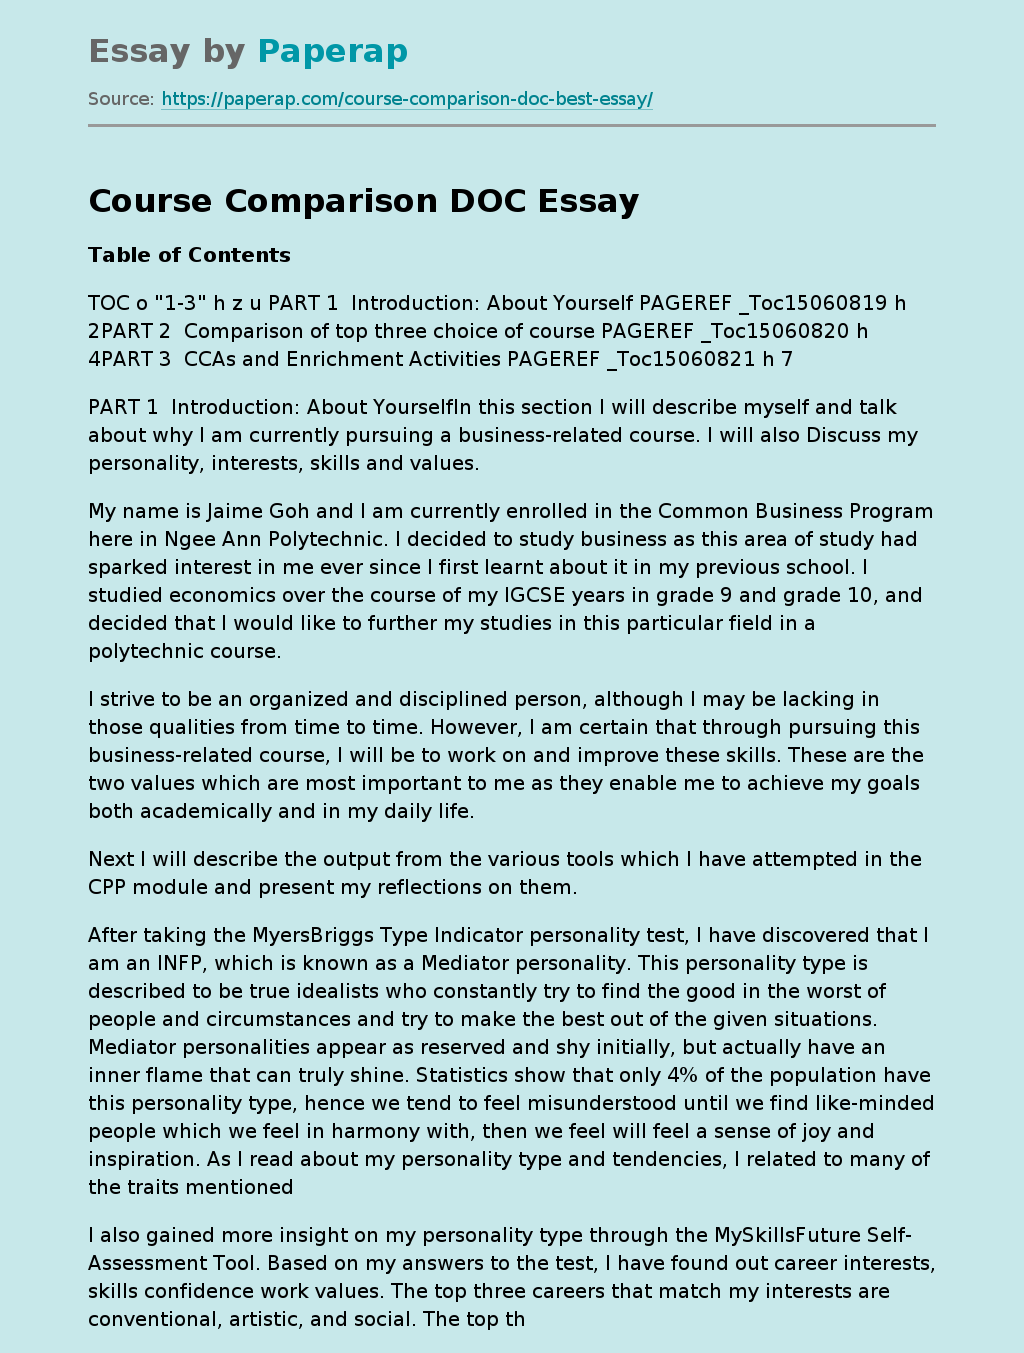 Course Comparison DOC